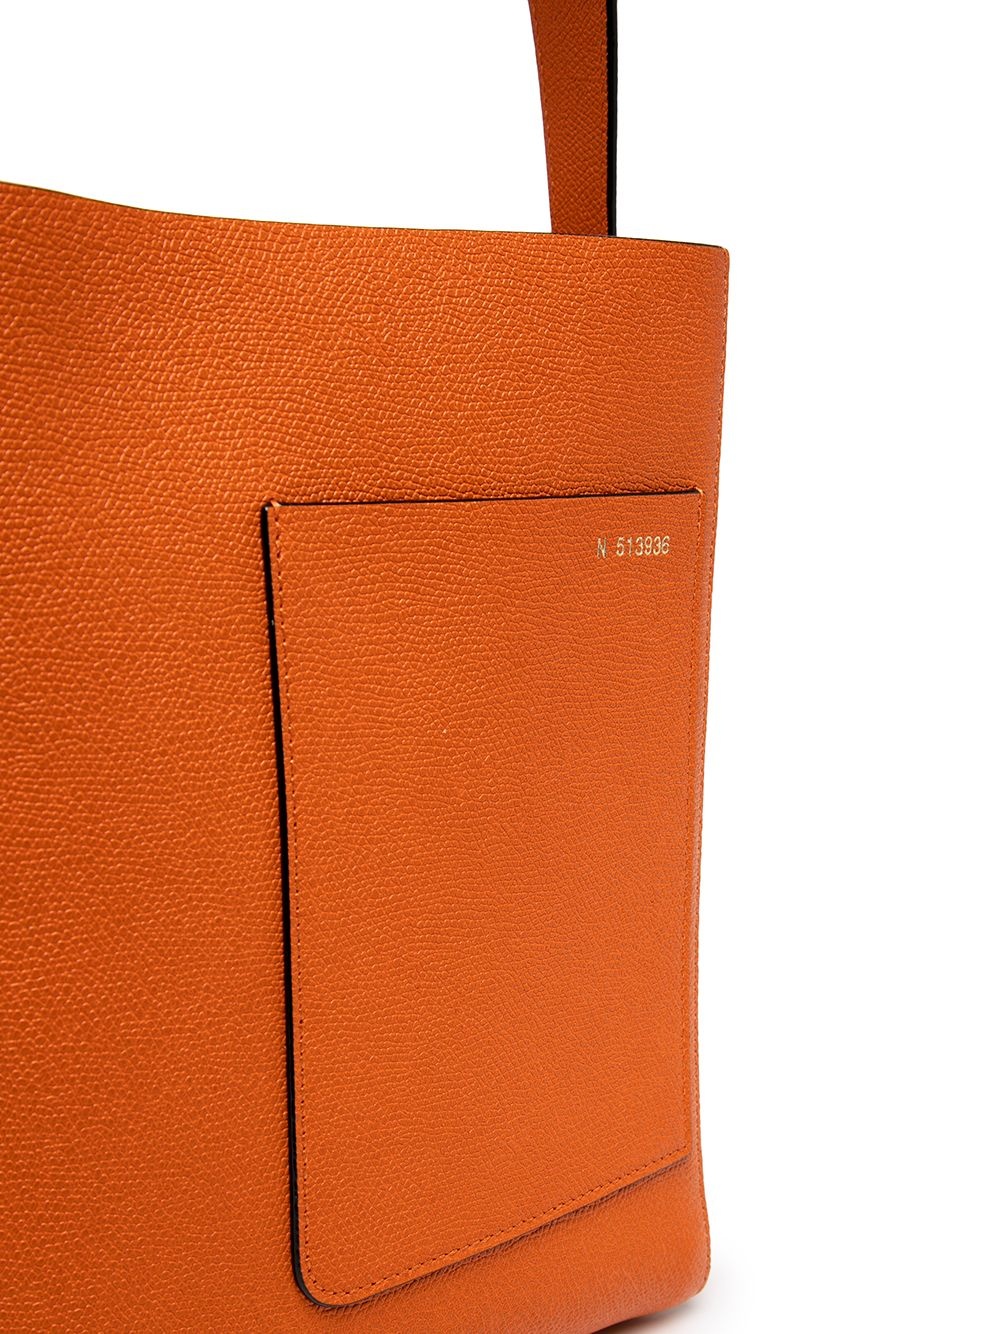 medium leather tote bag - 4